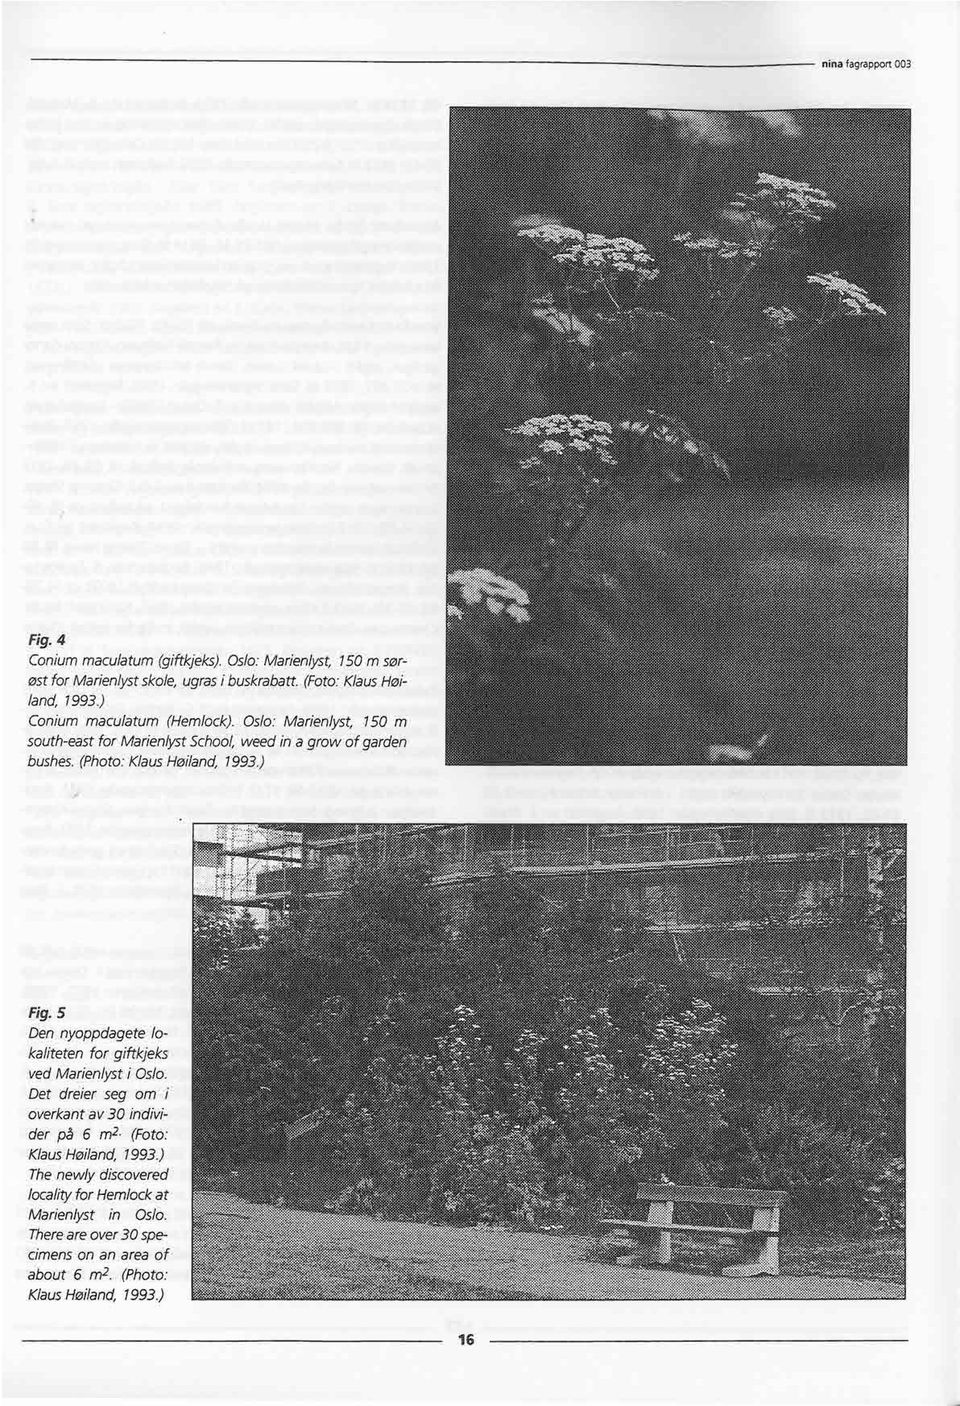 (Photo: Klaus Høiland, 1993.)..,... *' Fig.5 Den nyoppdagete lokaliteten for giftkjeks, ved Marienlyst i Oslo. Det dreier seg om overkant av 30 individer på 6 m2.